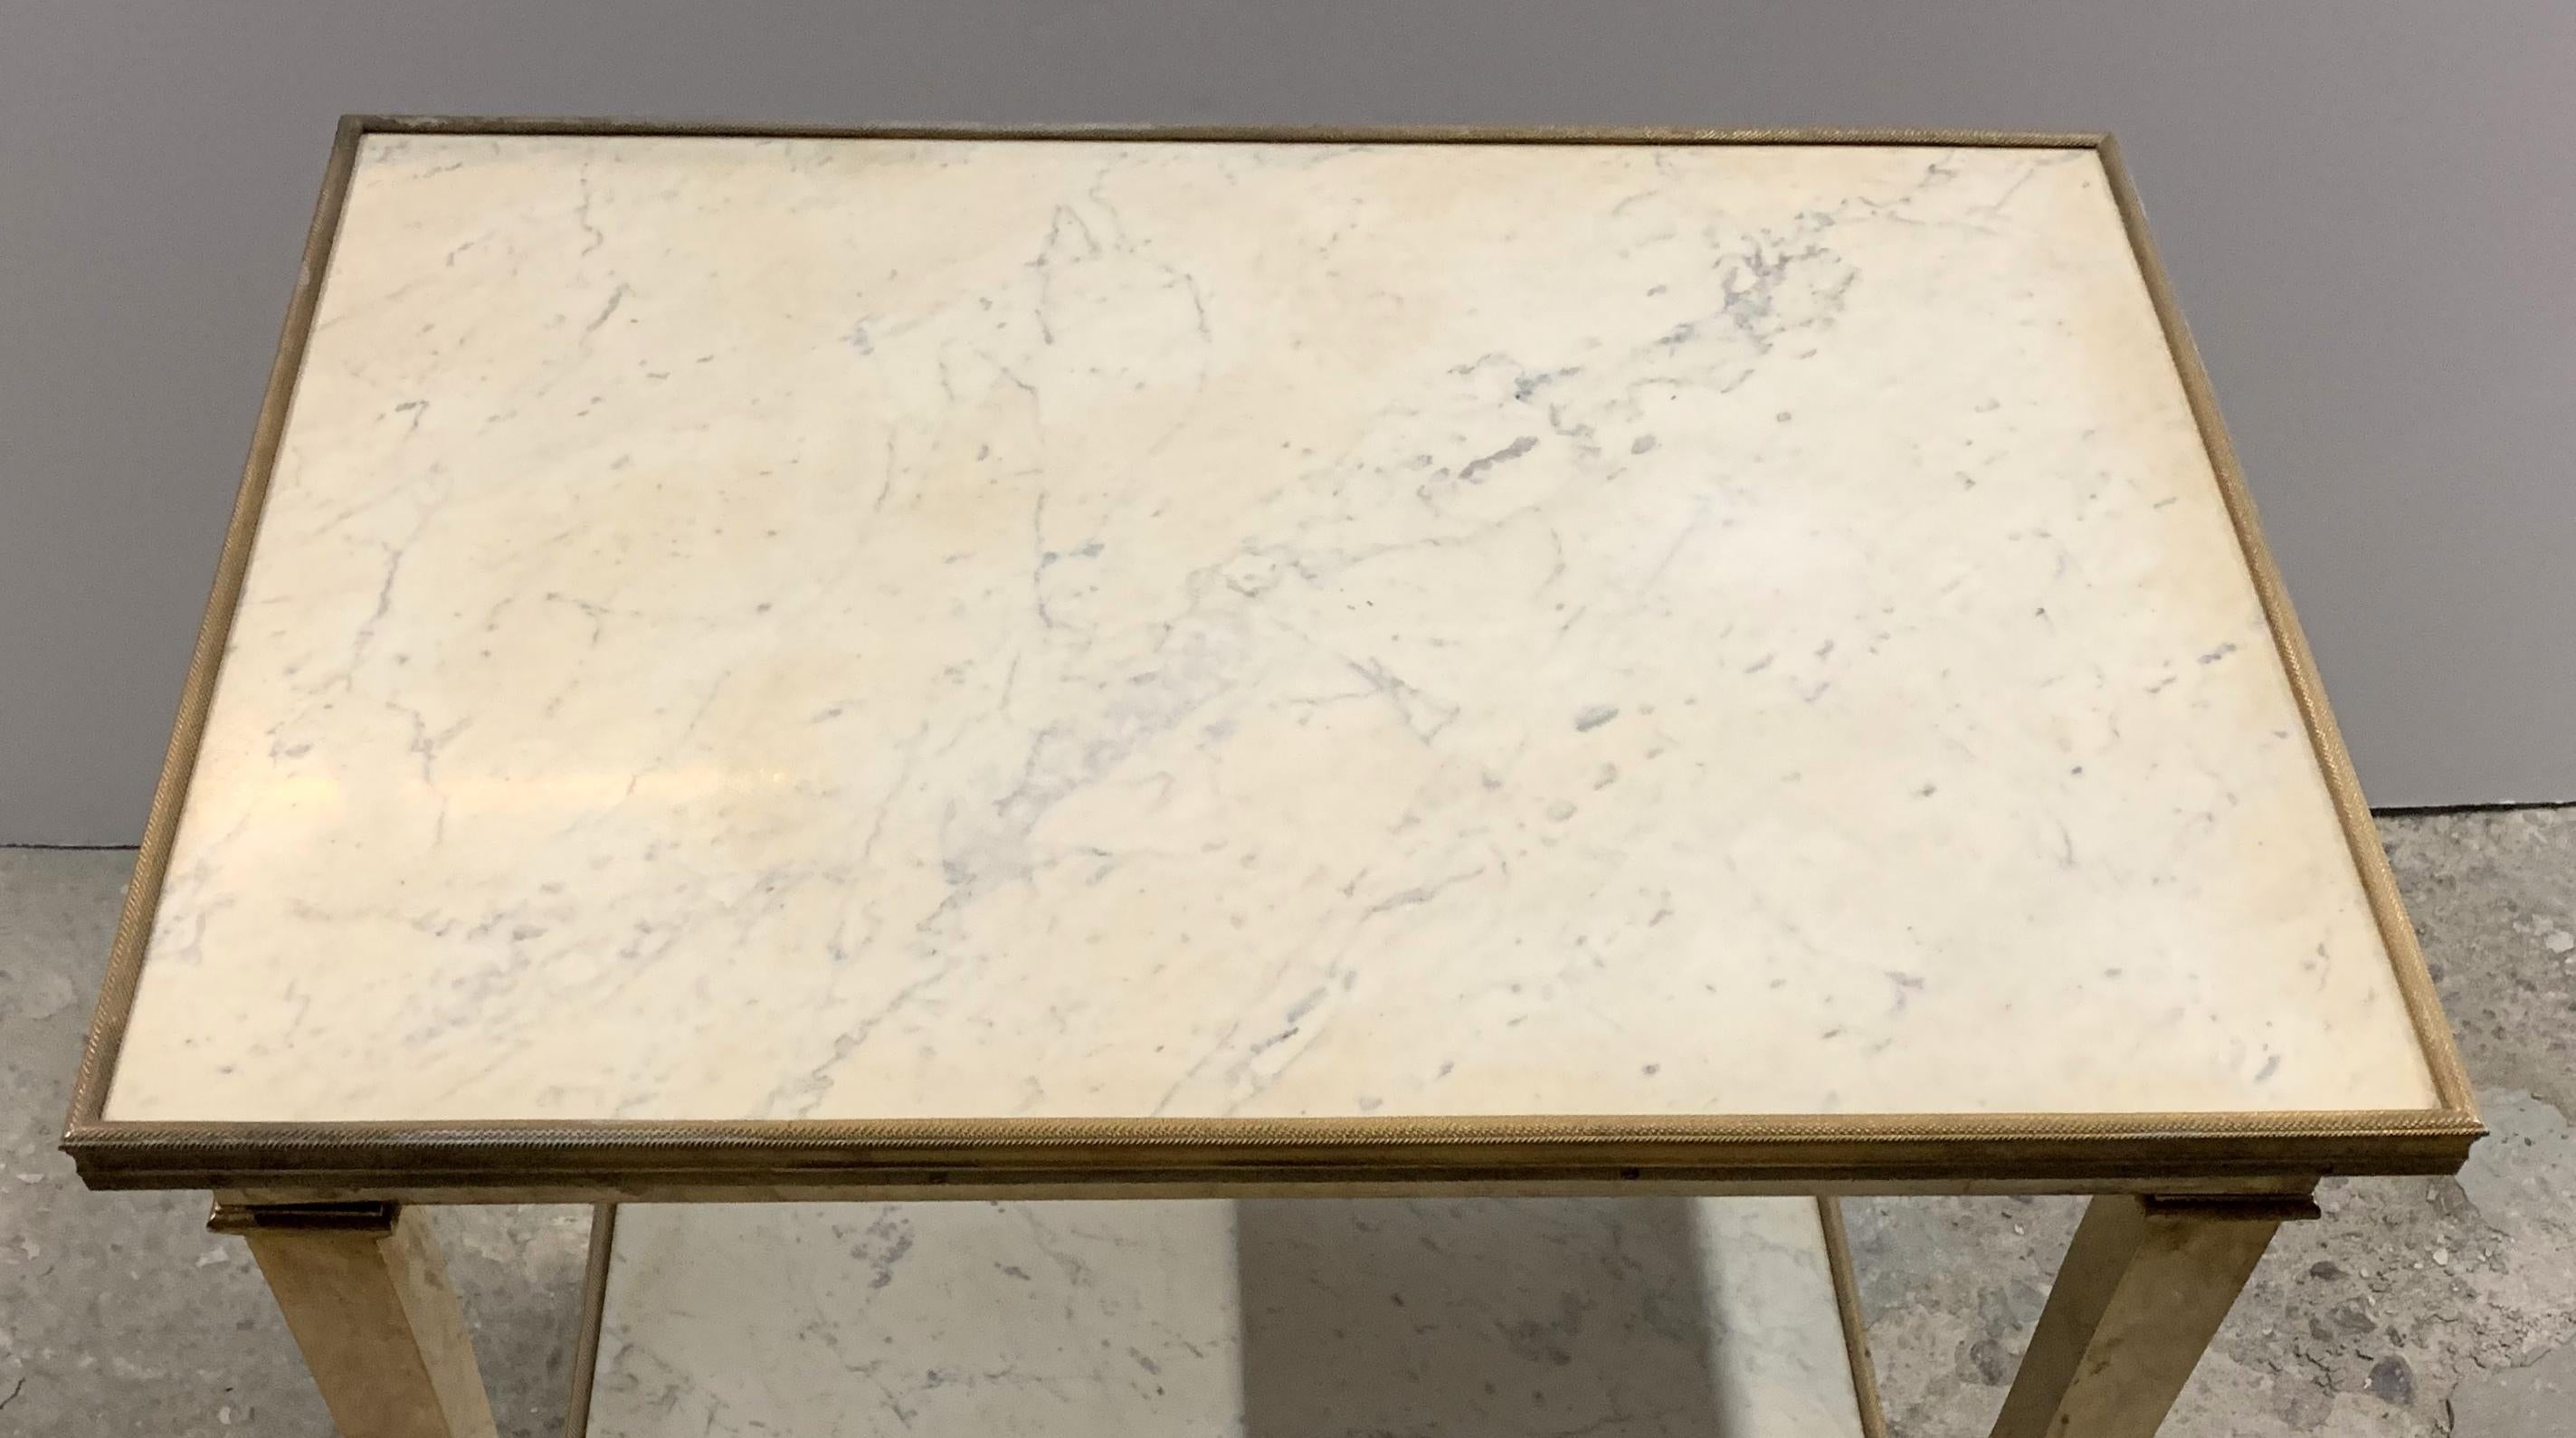 Magnifique guéridon ou table d'appoint néoclassique français en bronze doré et marbre à deux niveaux.
Acheté à Lorin Marsh.